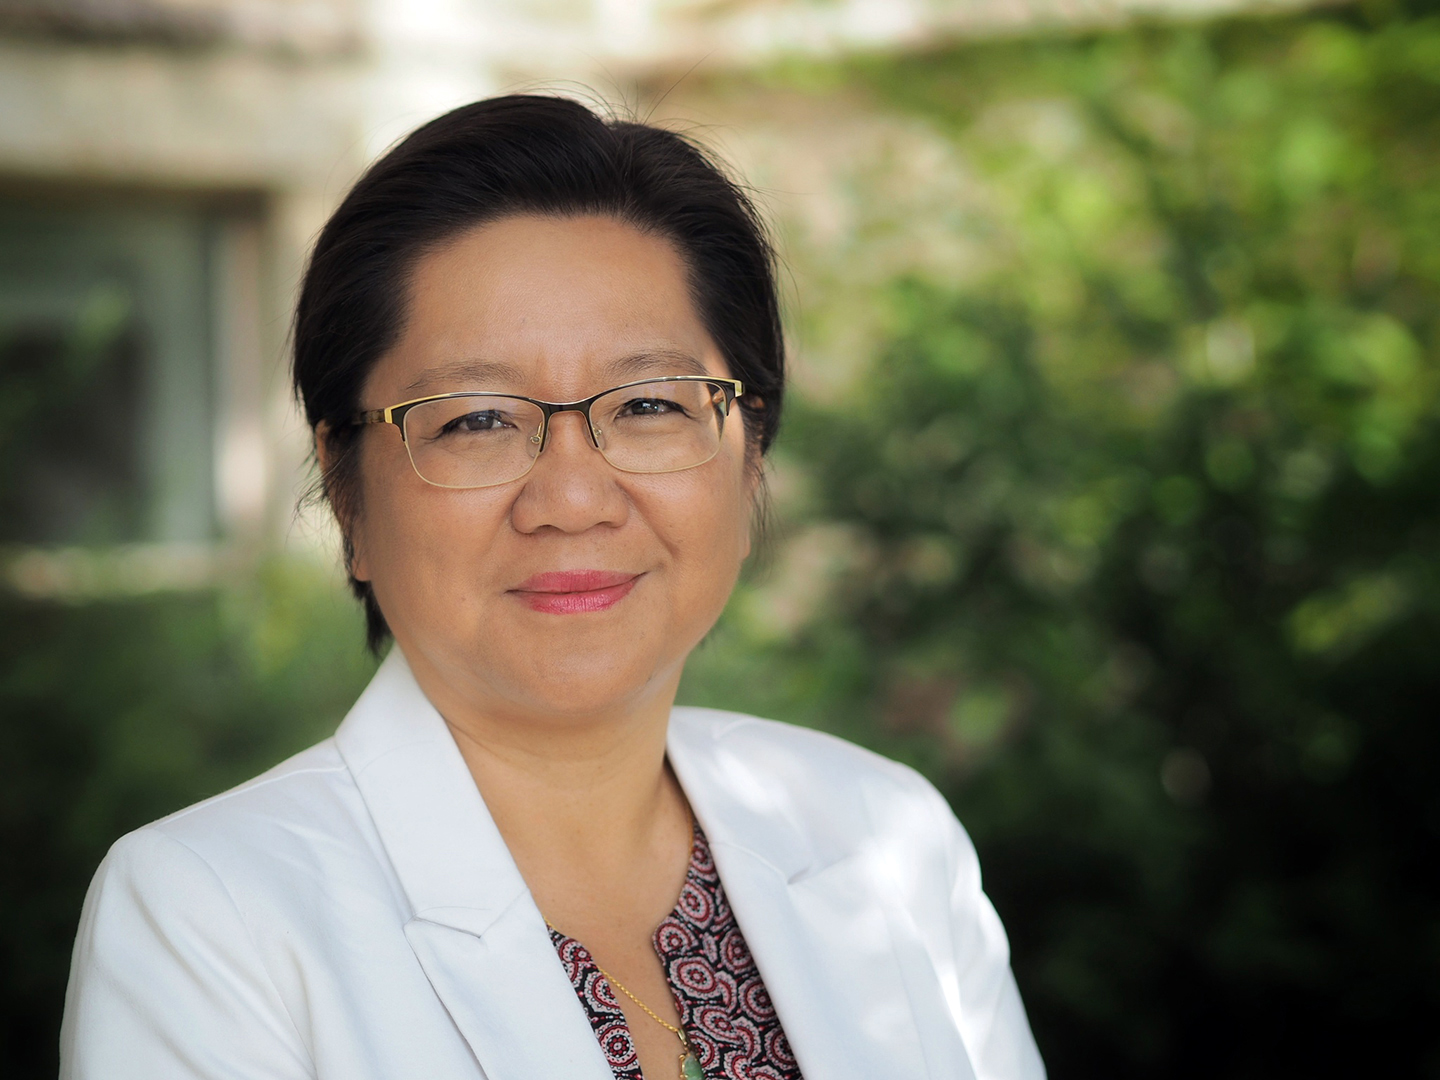 Professor Lili Liu